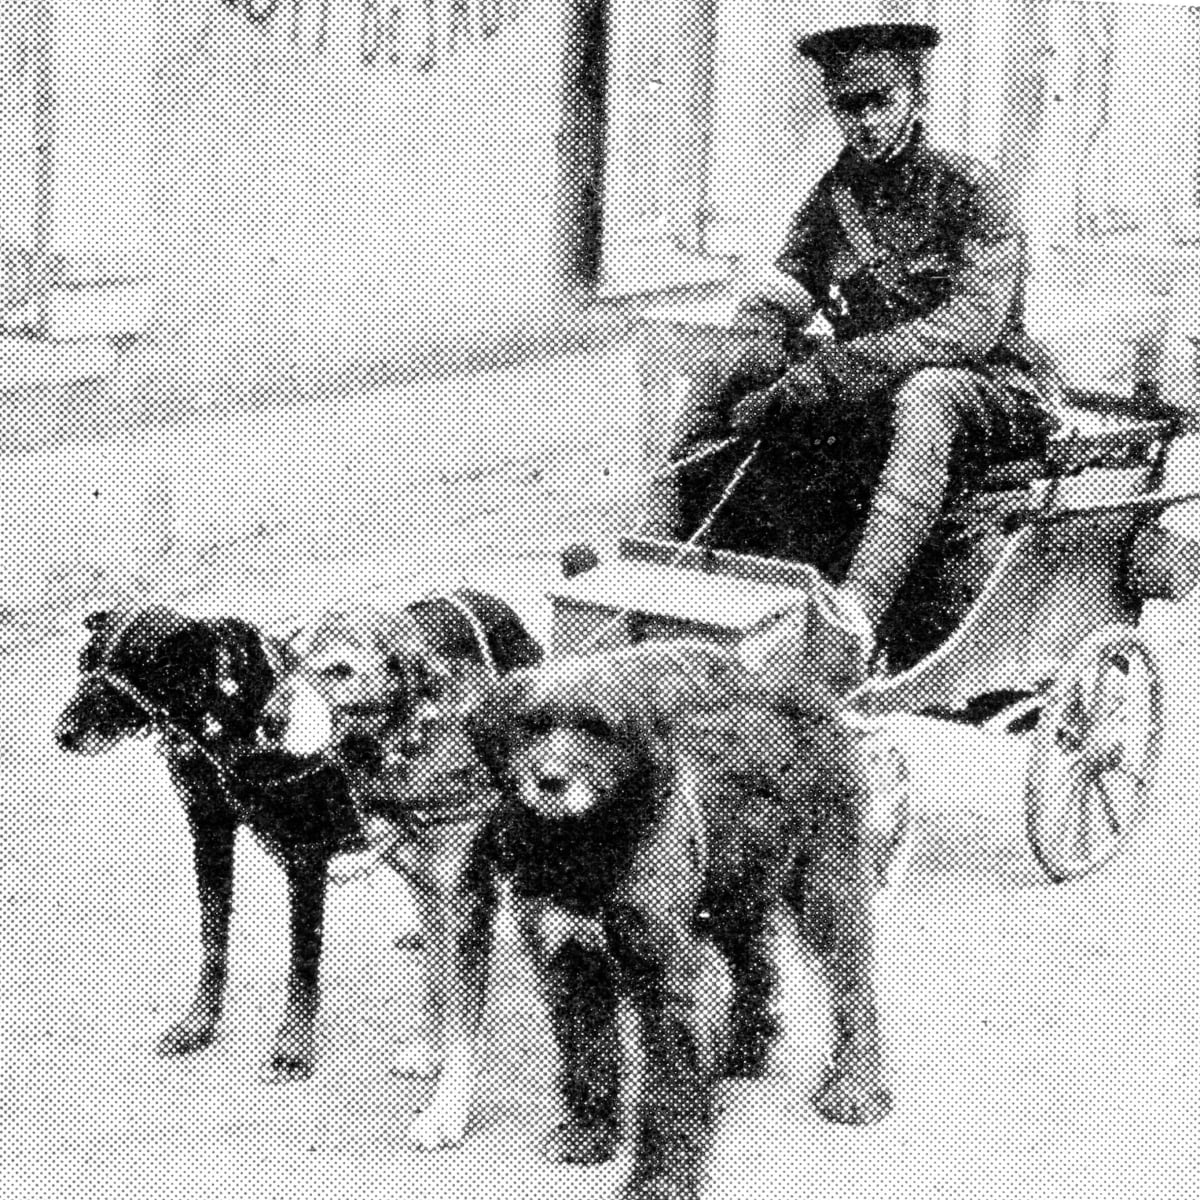 War-Dogs of First World War (WWI, First Great European War) 1914-1918 -  Owlcation